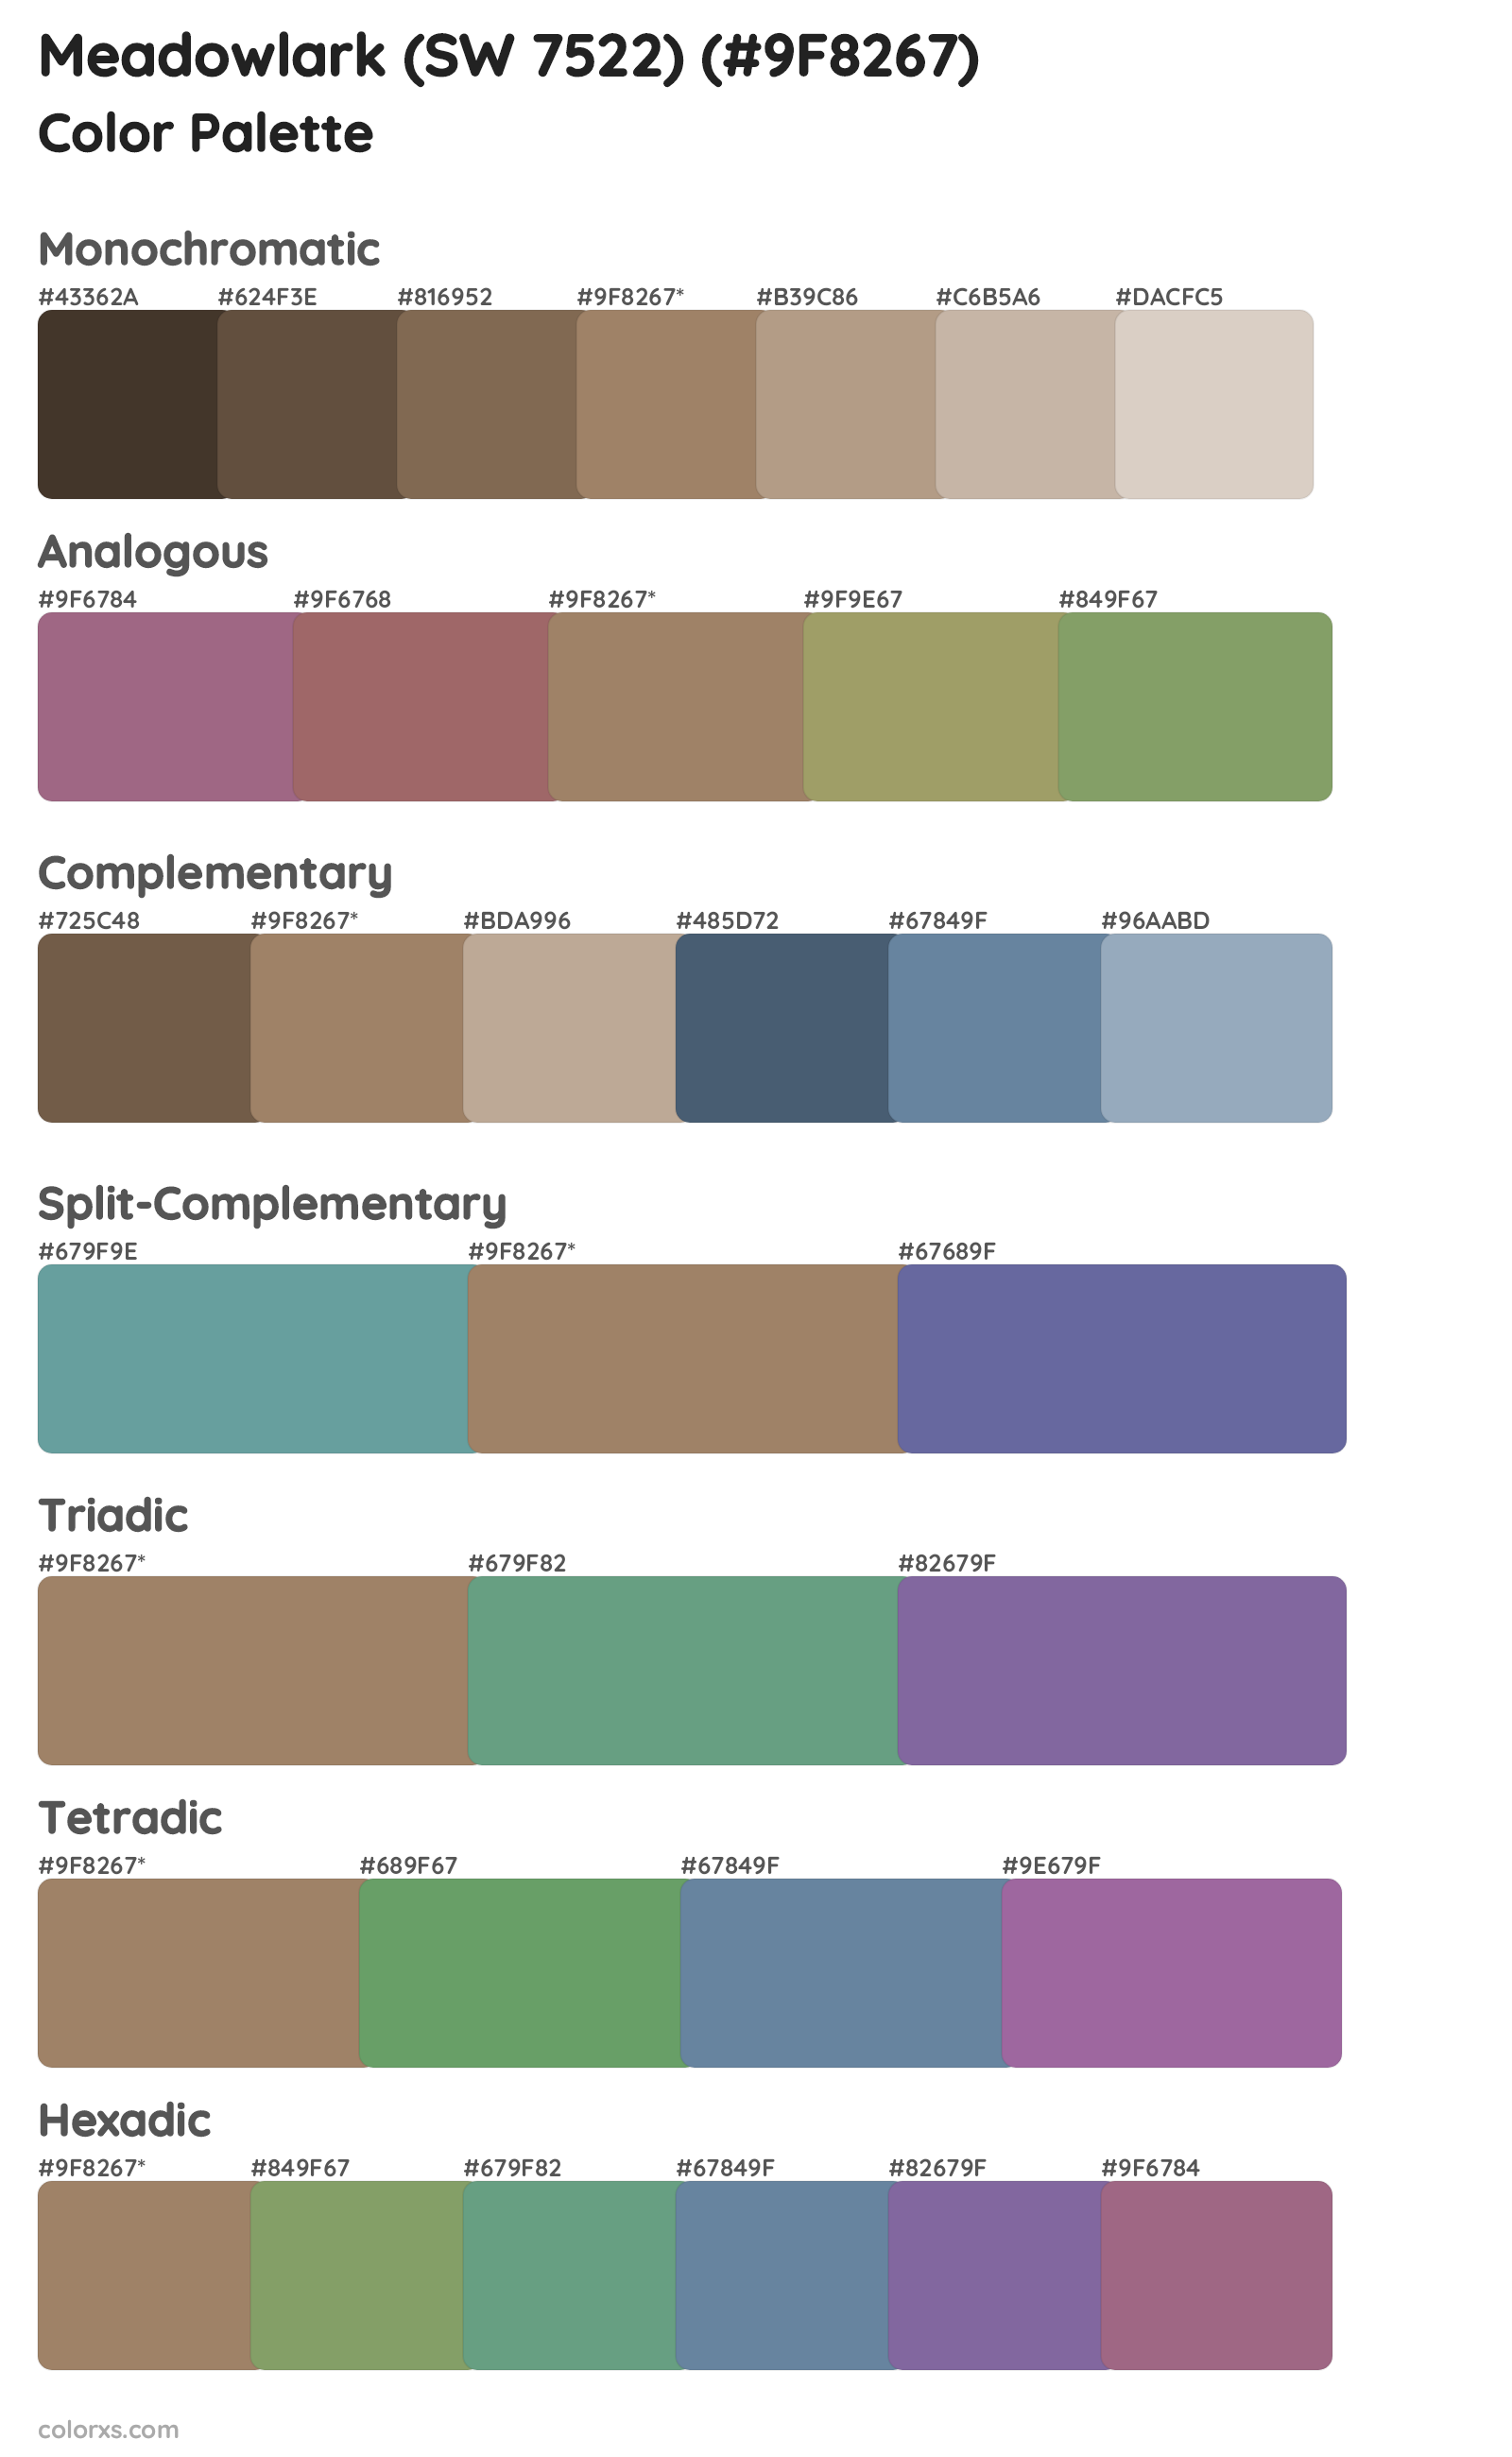 Meadowlark (SW 7522) Color Scheme Palettes